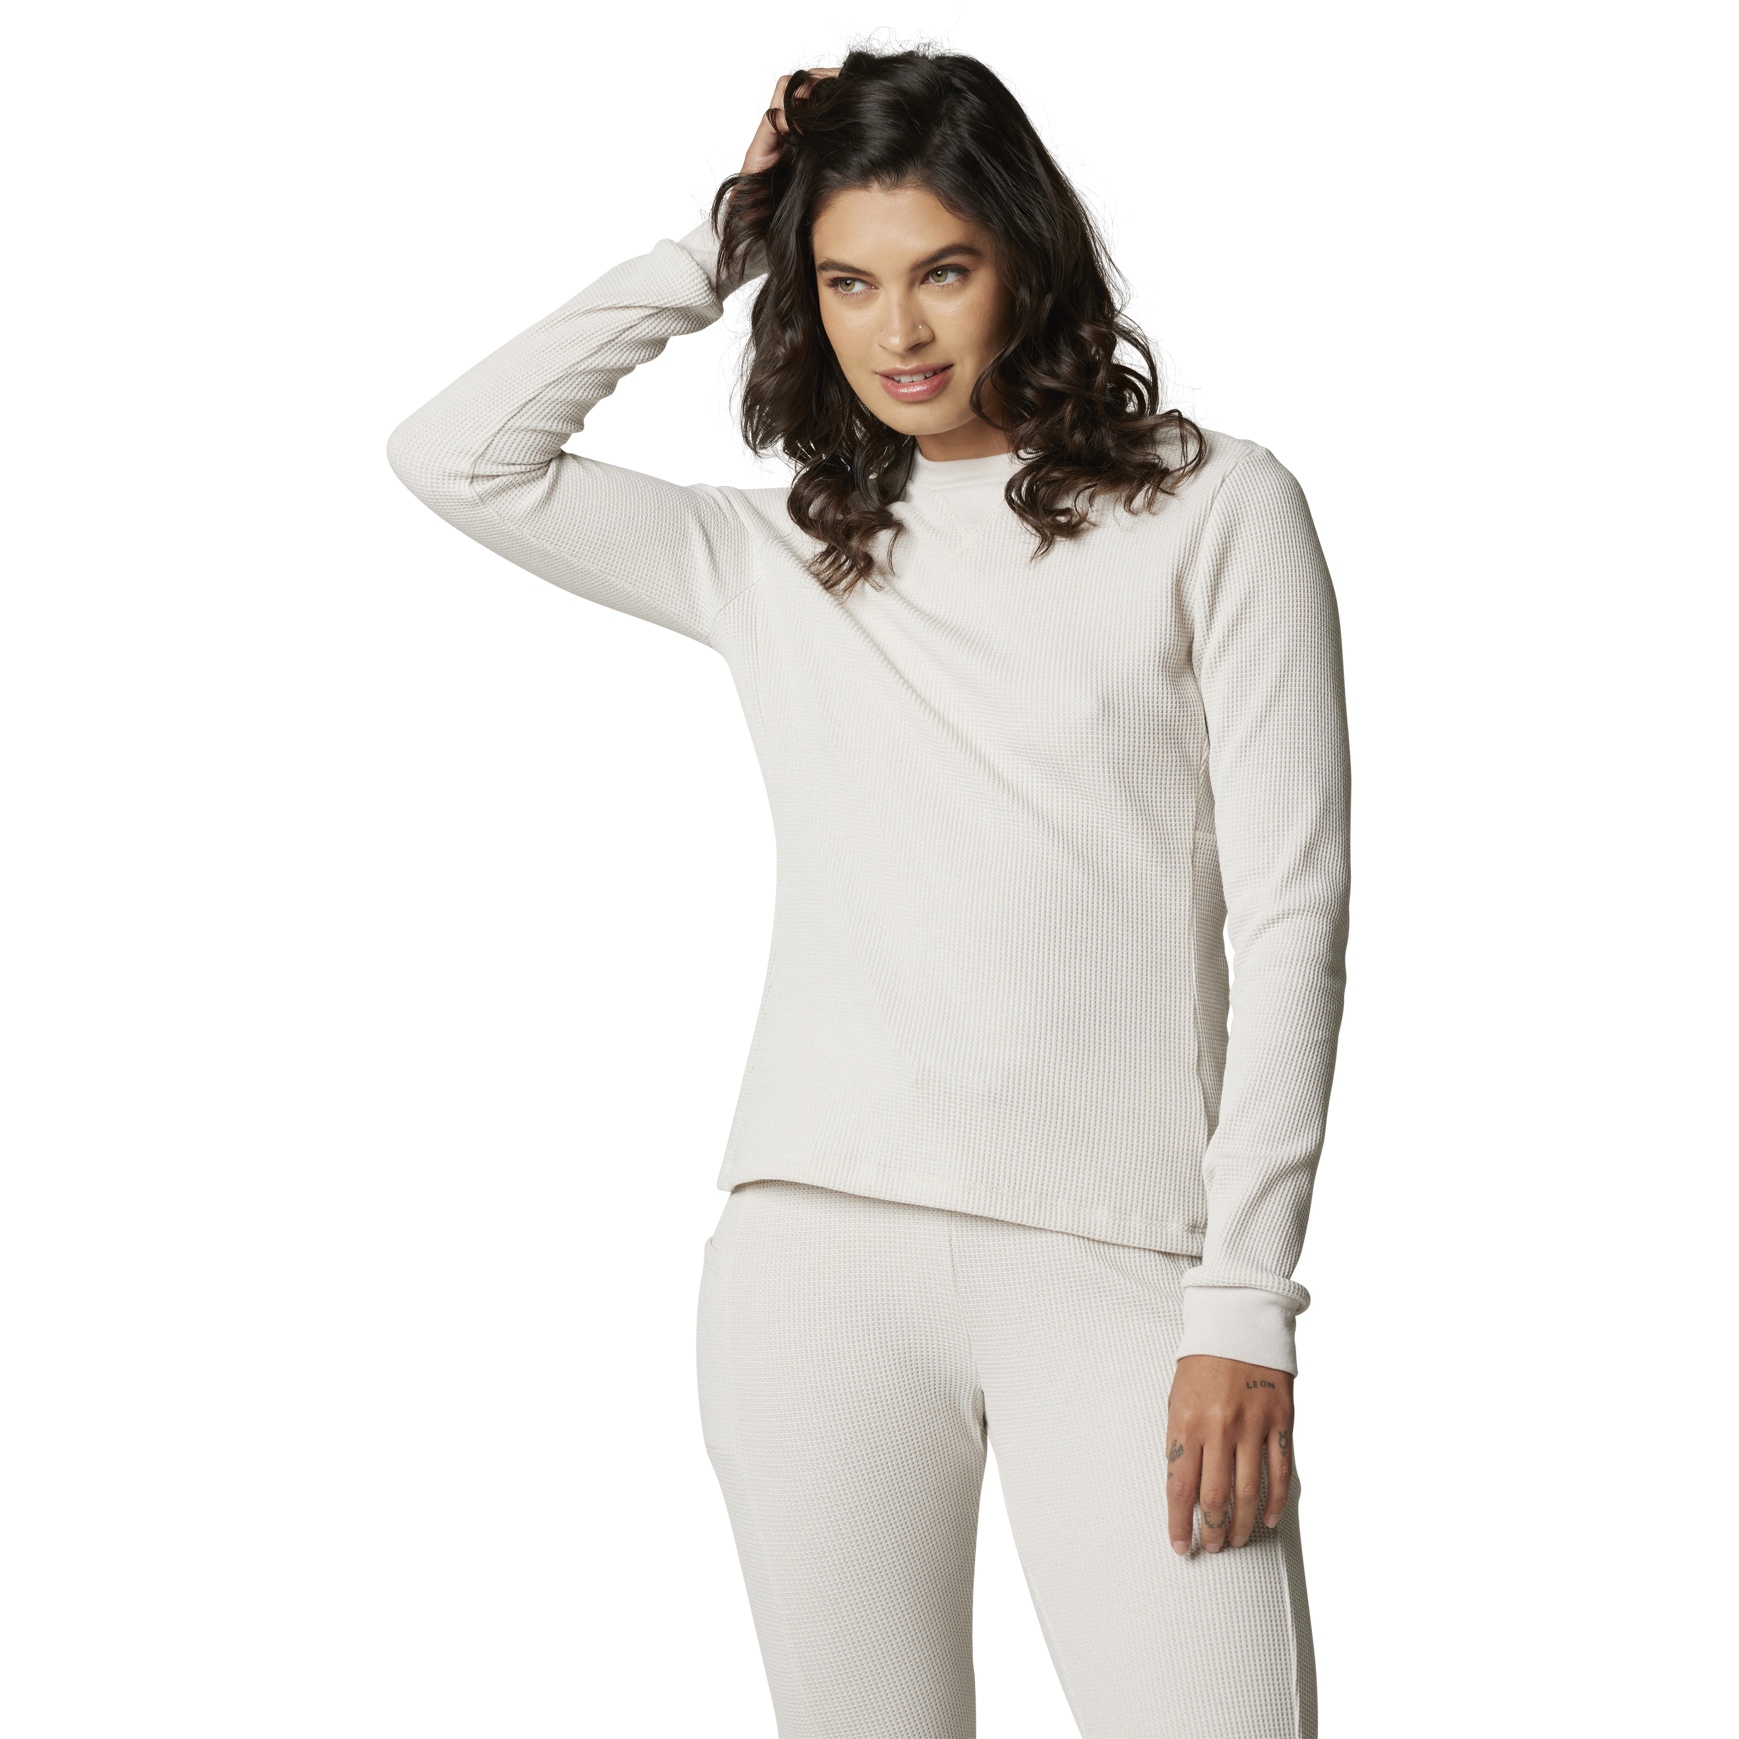 Produktbild von FOX High Desert Thermal Langarmshirt Damen - vintage white